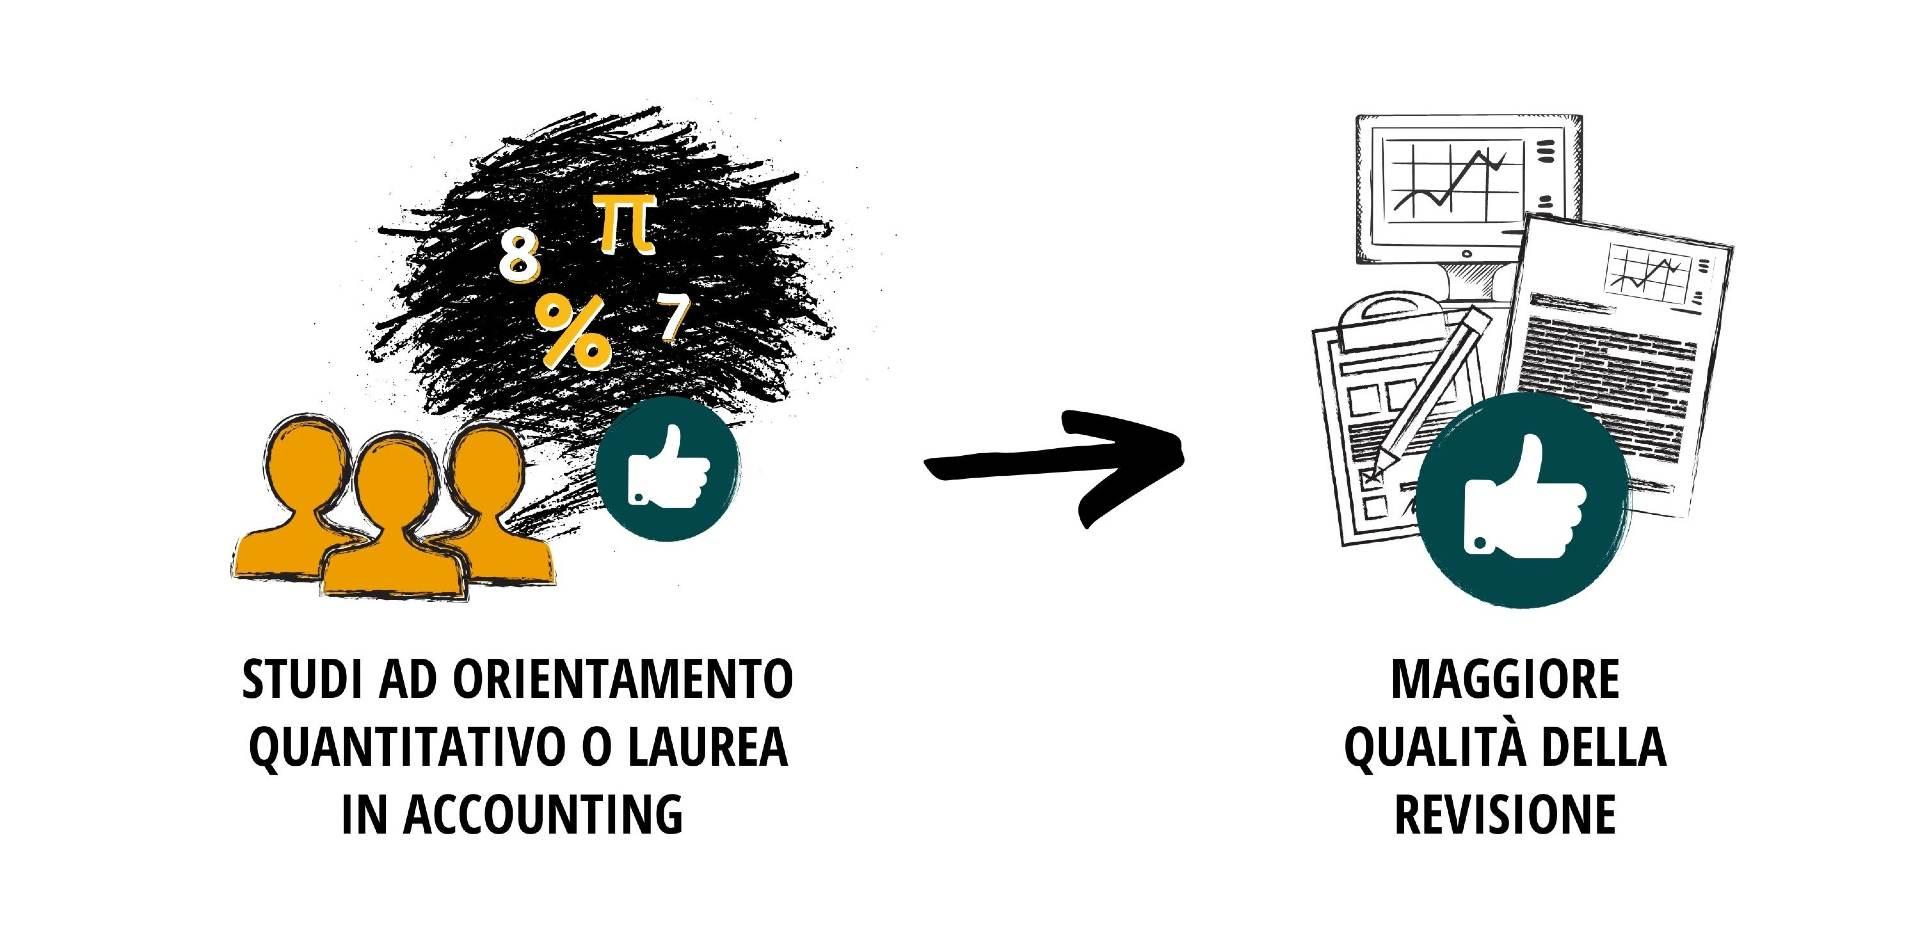 L'iilustrazione mostra che i revisori con studi ad orientamento quantitativo o con laurea in accounting sono associati a una maggiore qualitÃ  della revisione.